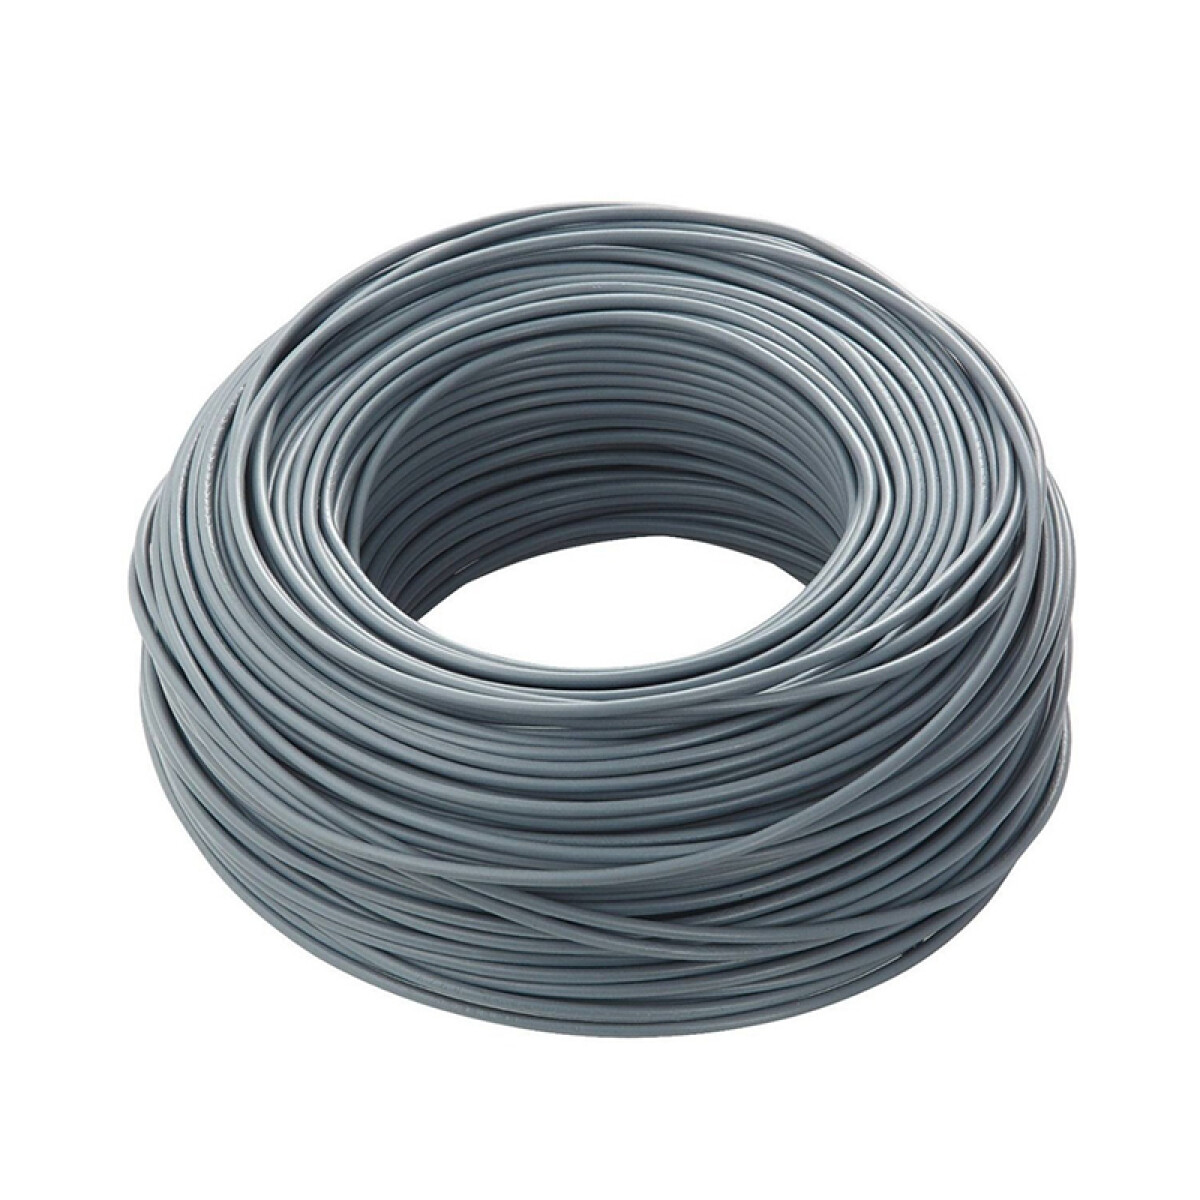 Cable bajo plástico flexible 3x3mm² - Rollo 100mt - C95328 